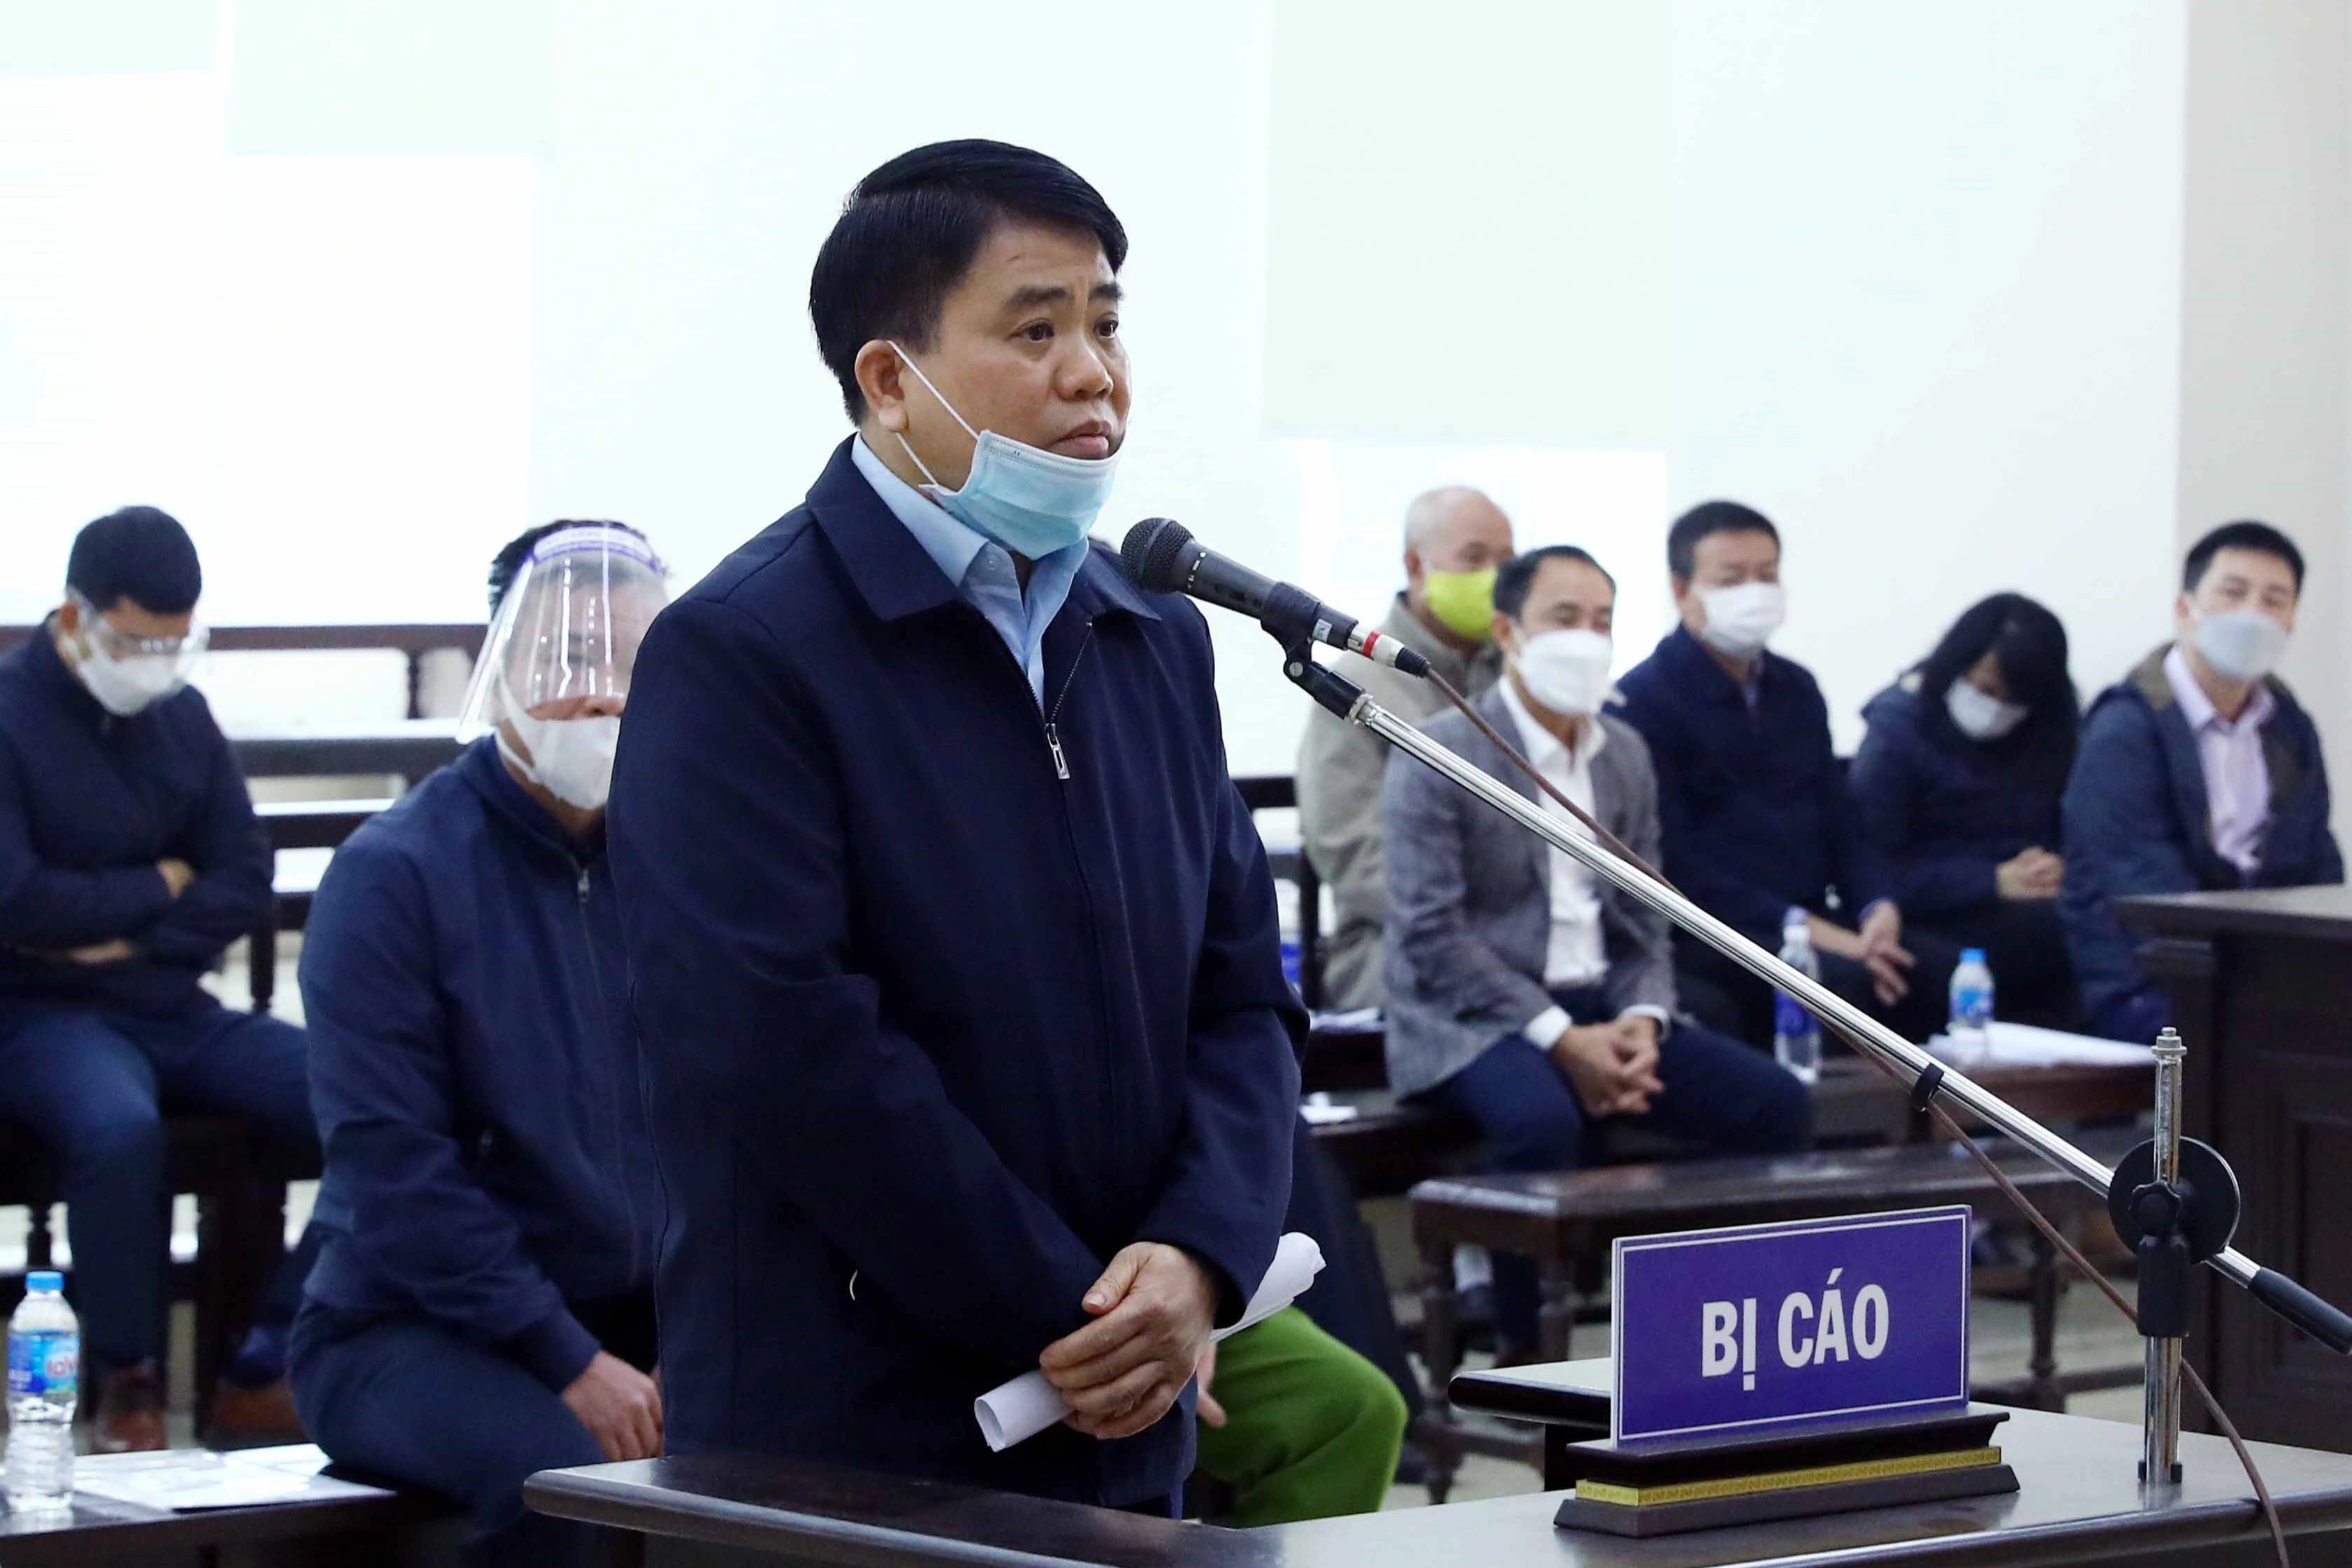 Bất ngờ nộp 10 tỷ đồng, ông Nguyễn Đức Chung được đề nghị giảm án